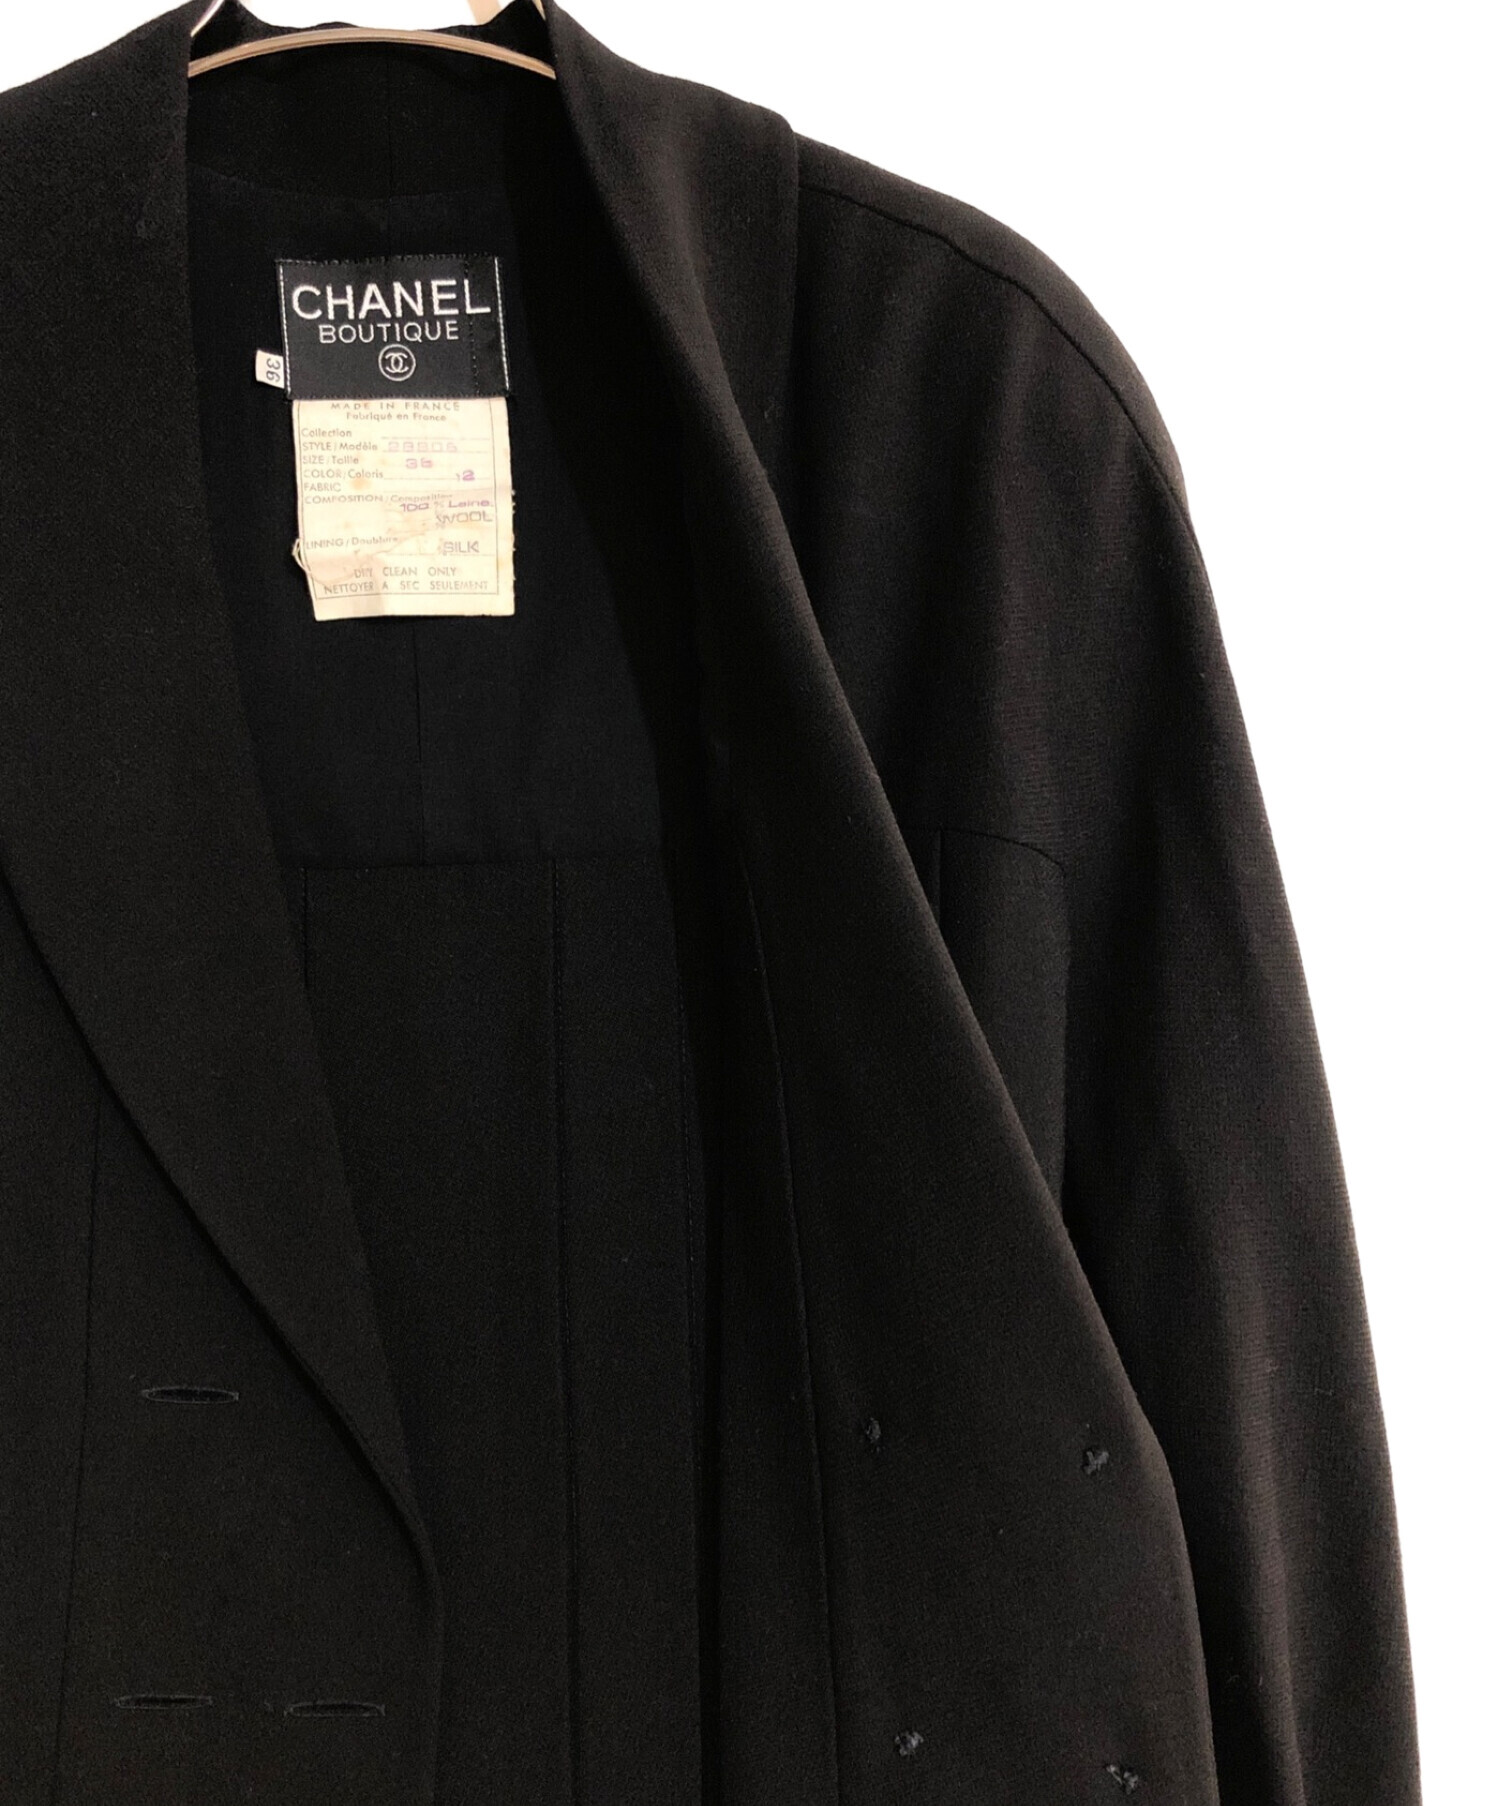 CHANEL (シャネル) ココマークボタンショールカラーコート ブラック サイズ:36